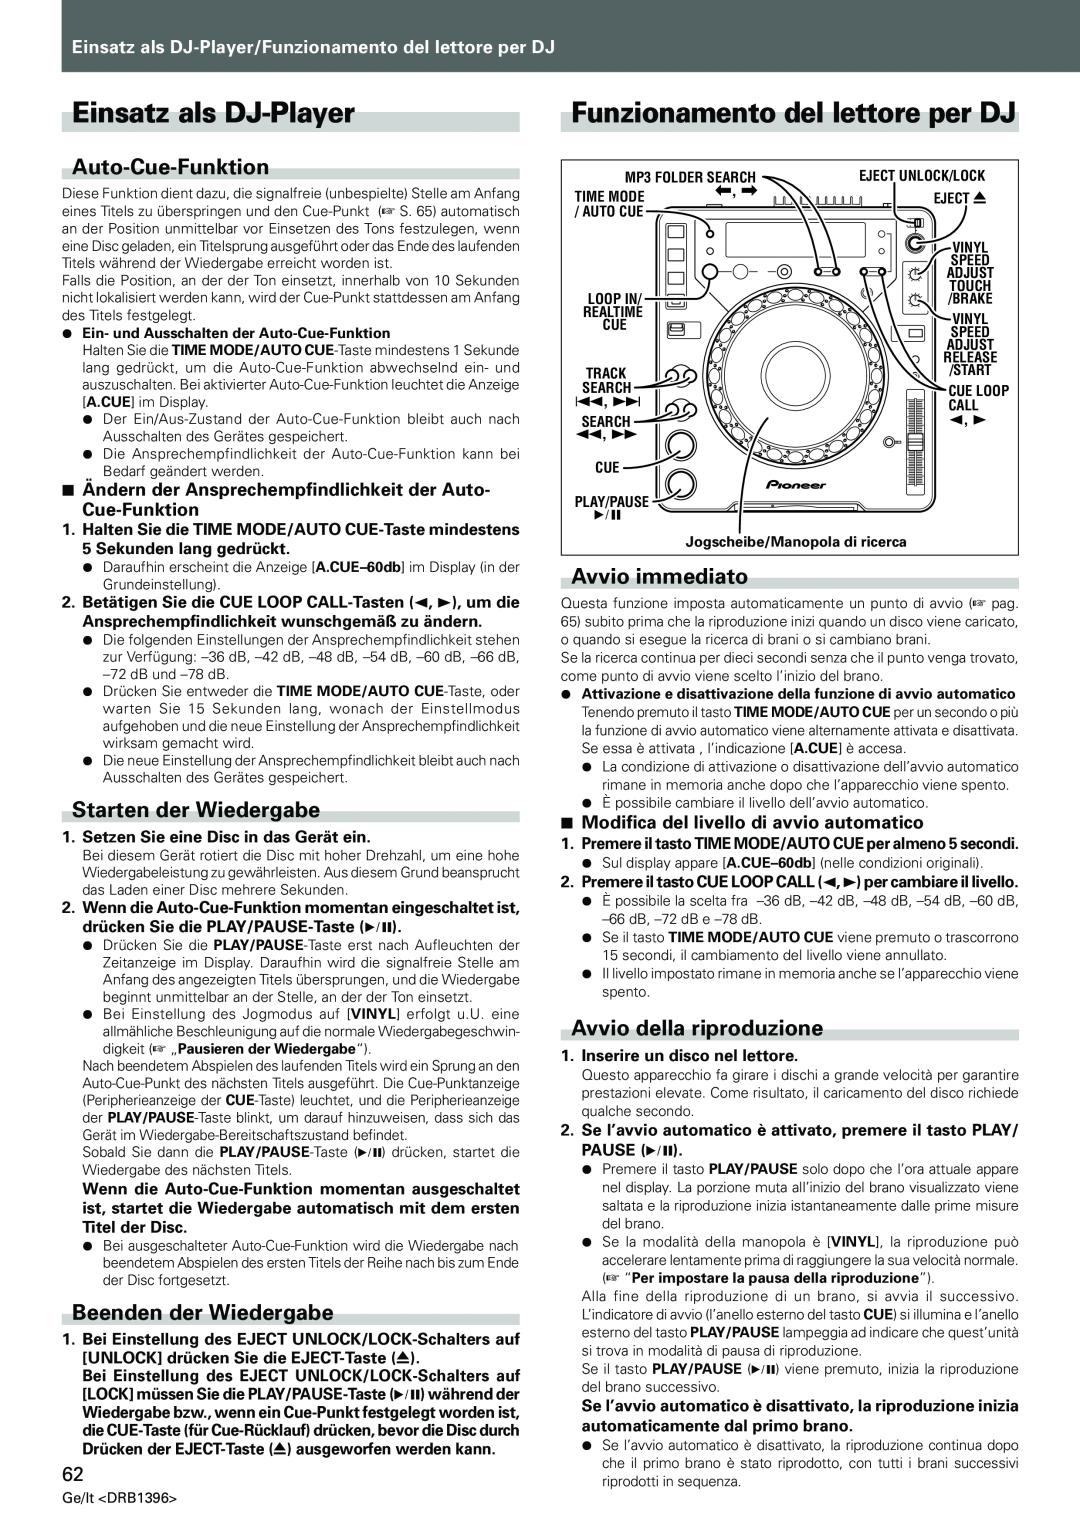 Pioneer CDJ-1000MK3 Einsatz als DJ-Player, Funzionamento del lettore per DJ, Auto-Cue-Funktion, Starten der Wiedergabe 